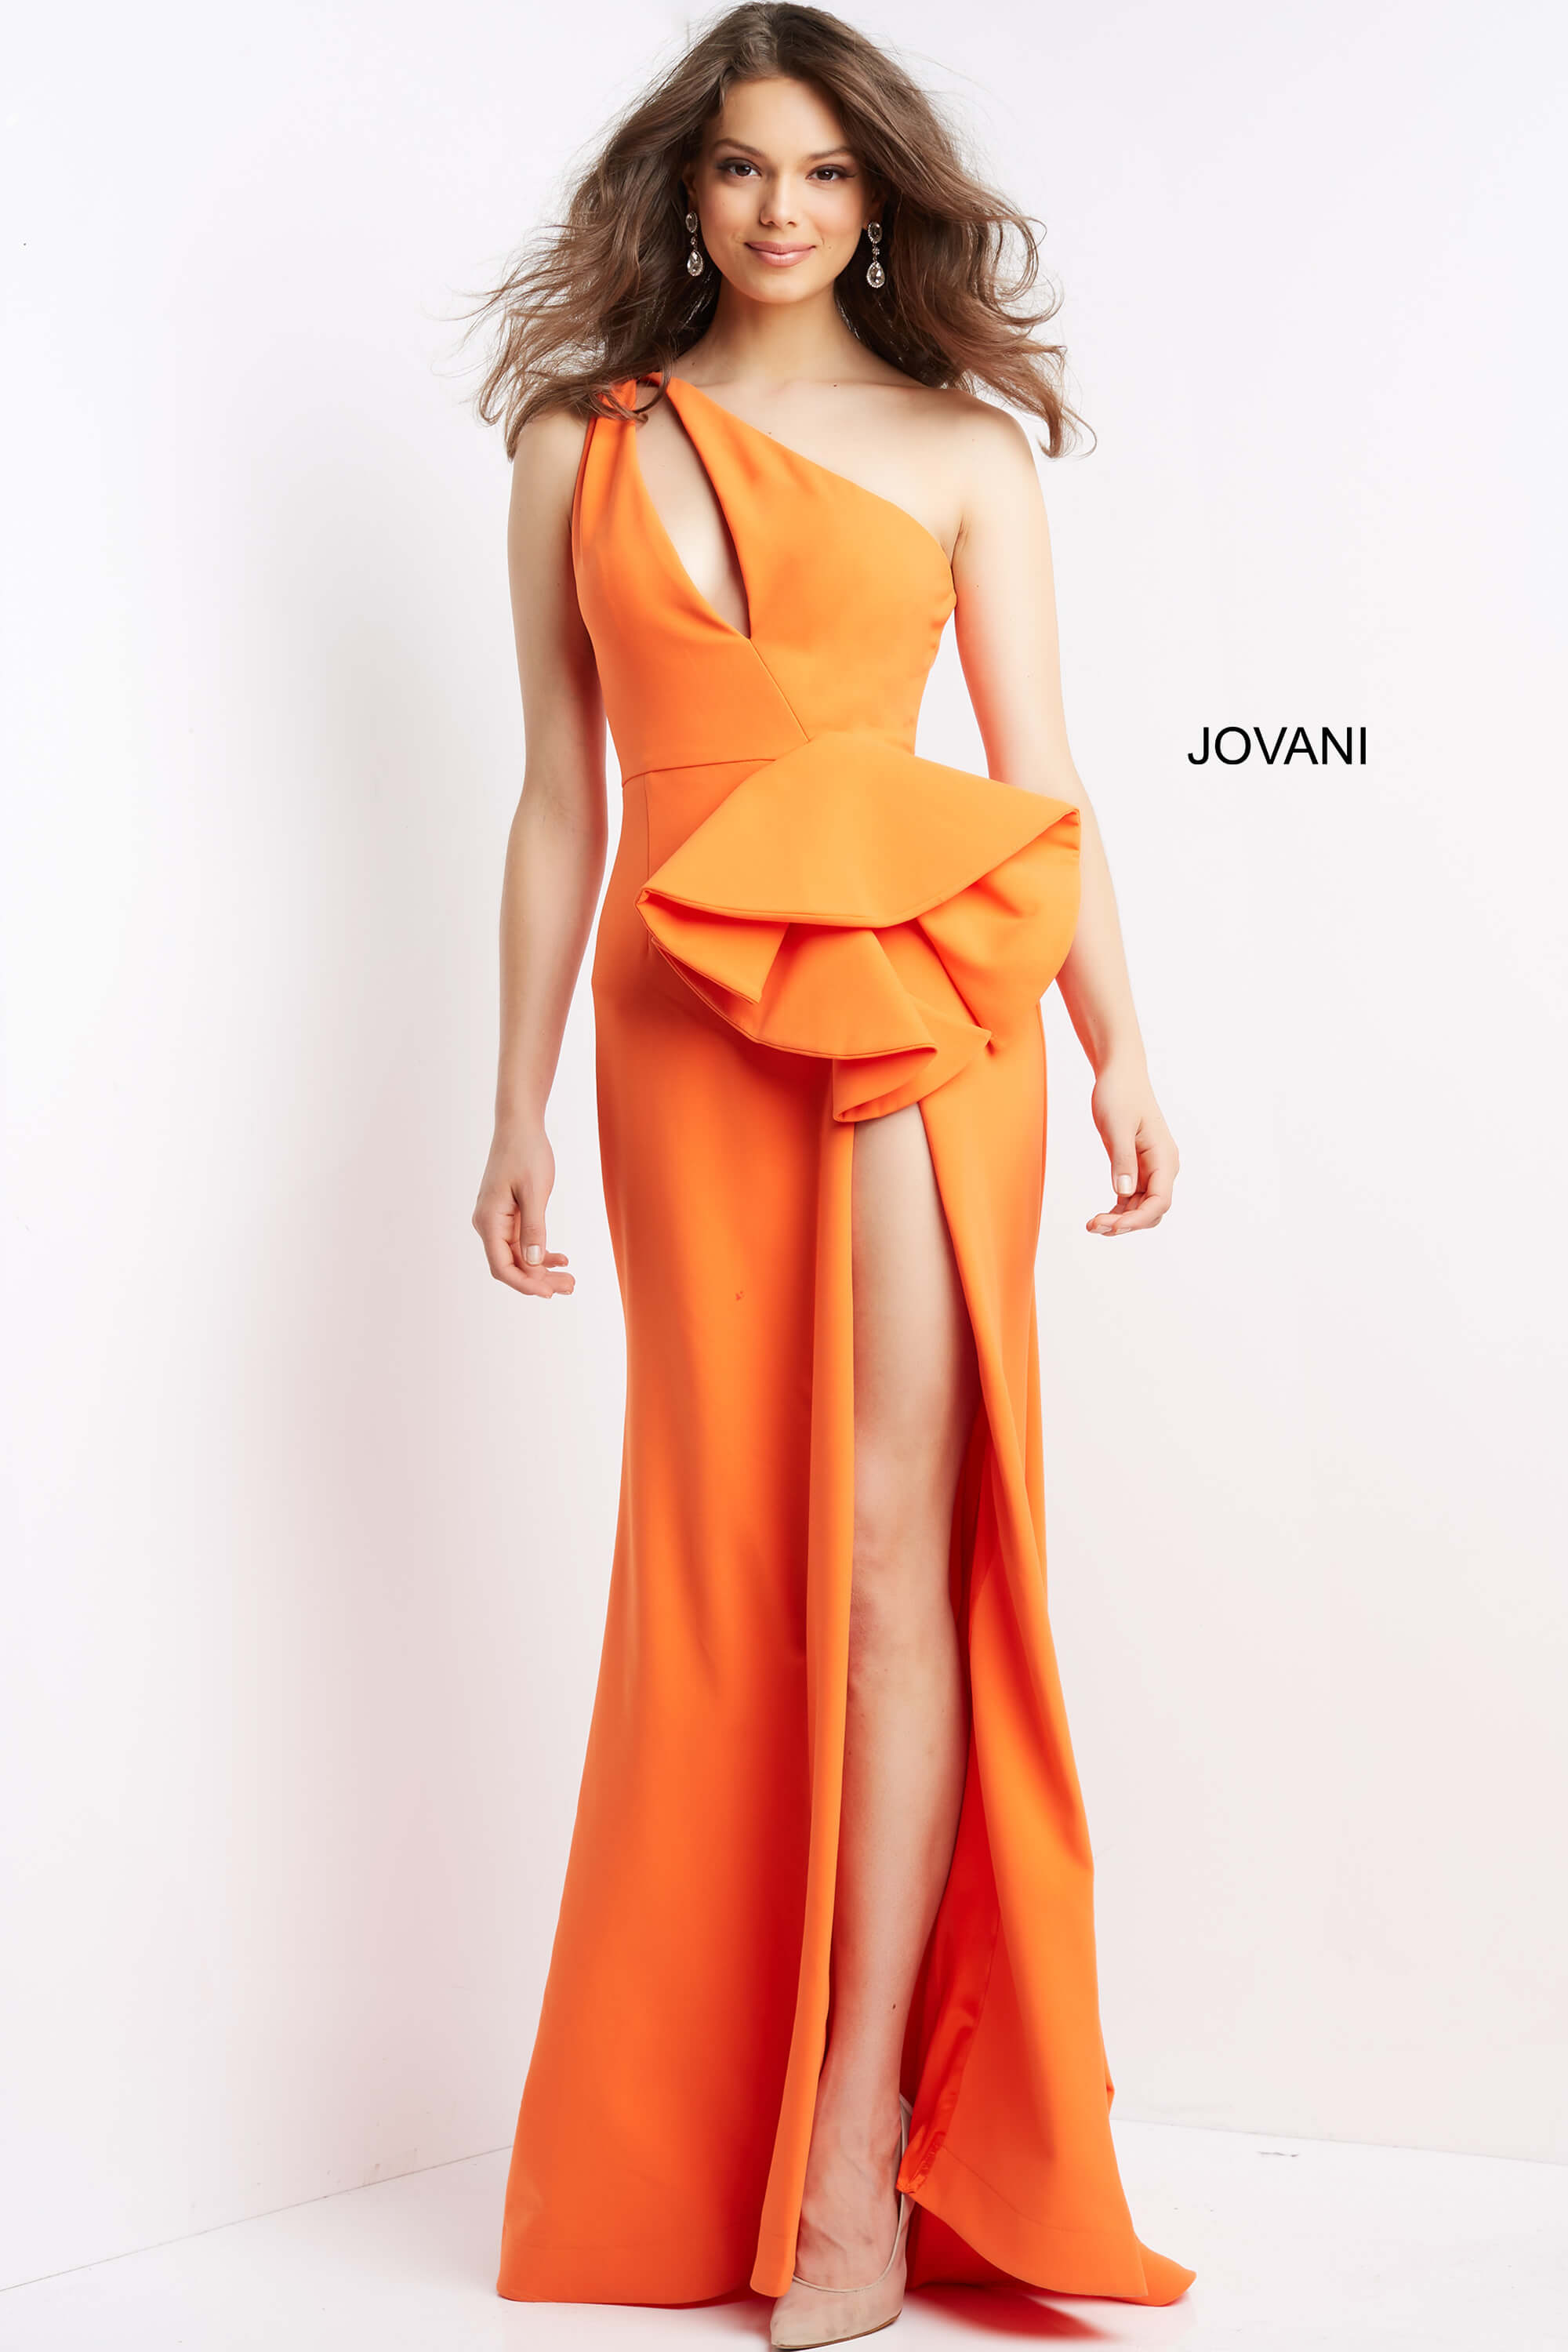 Scuba One Shoulder Prom Dress By Jovani -06756